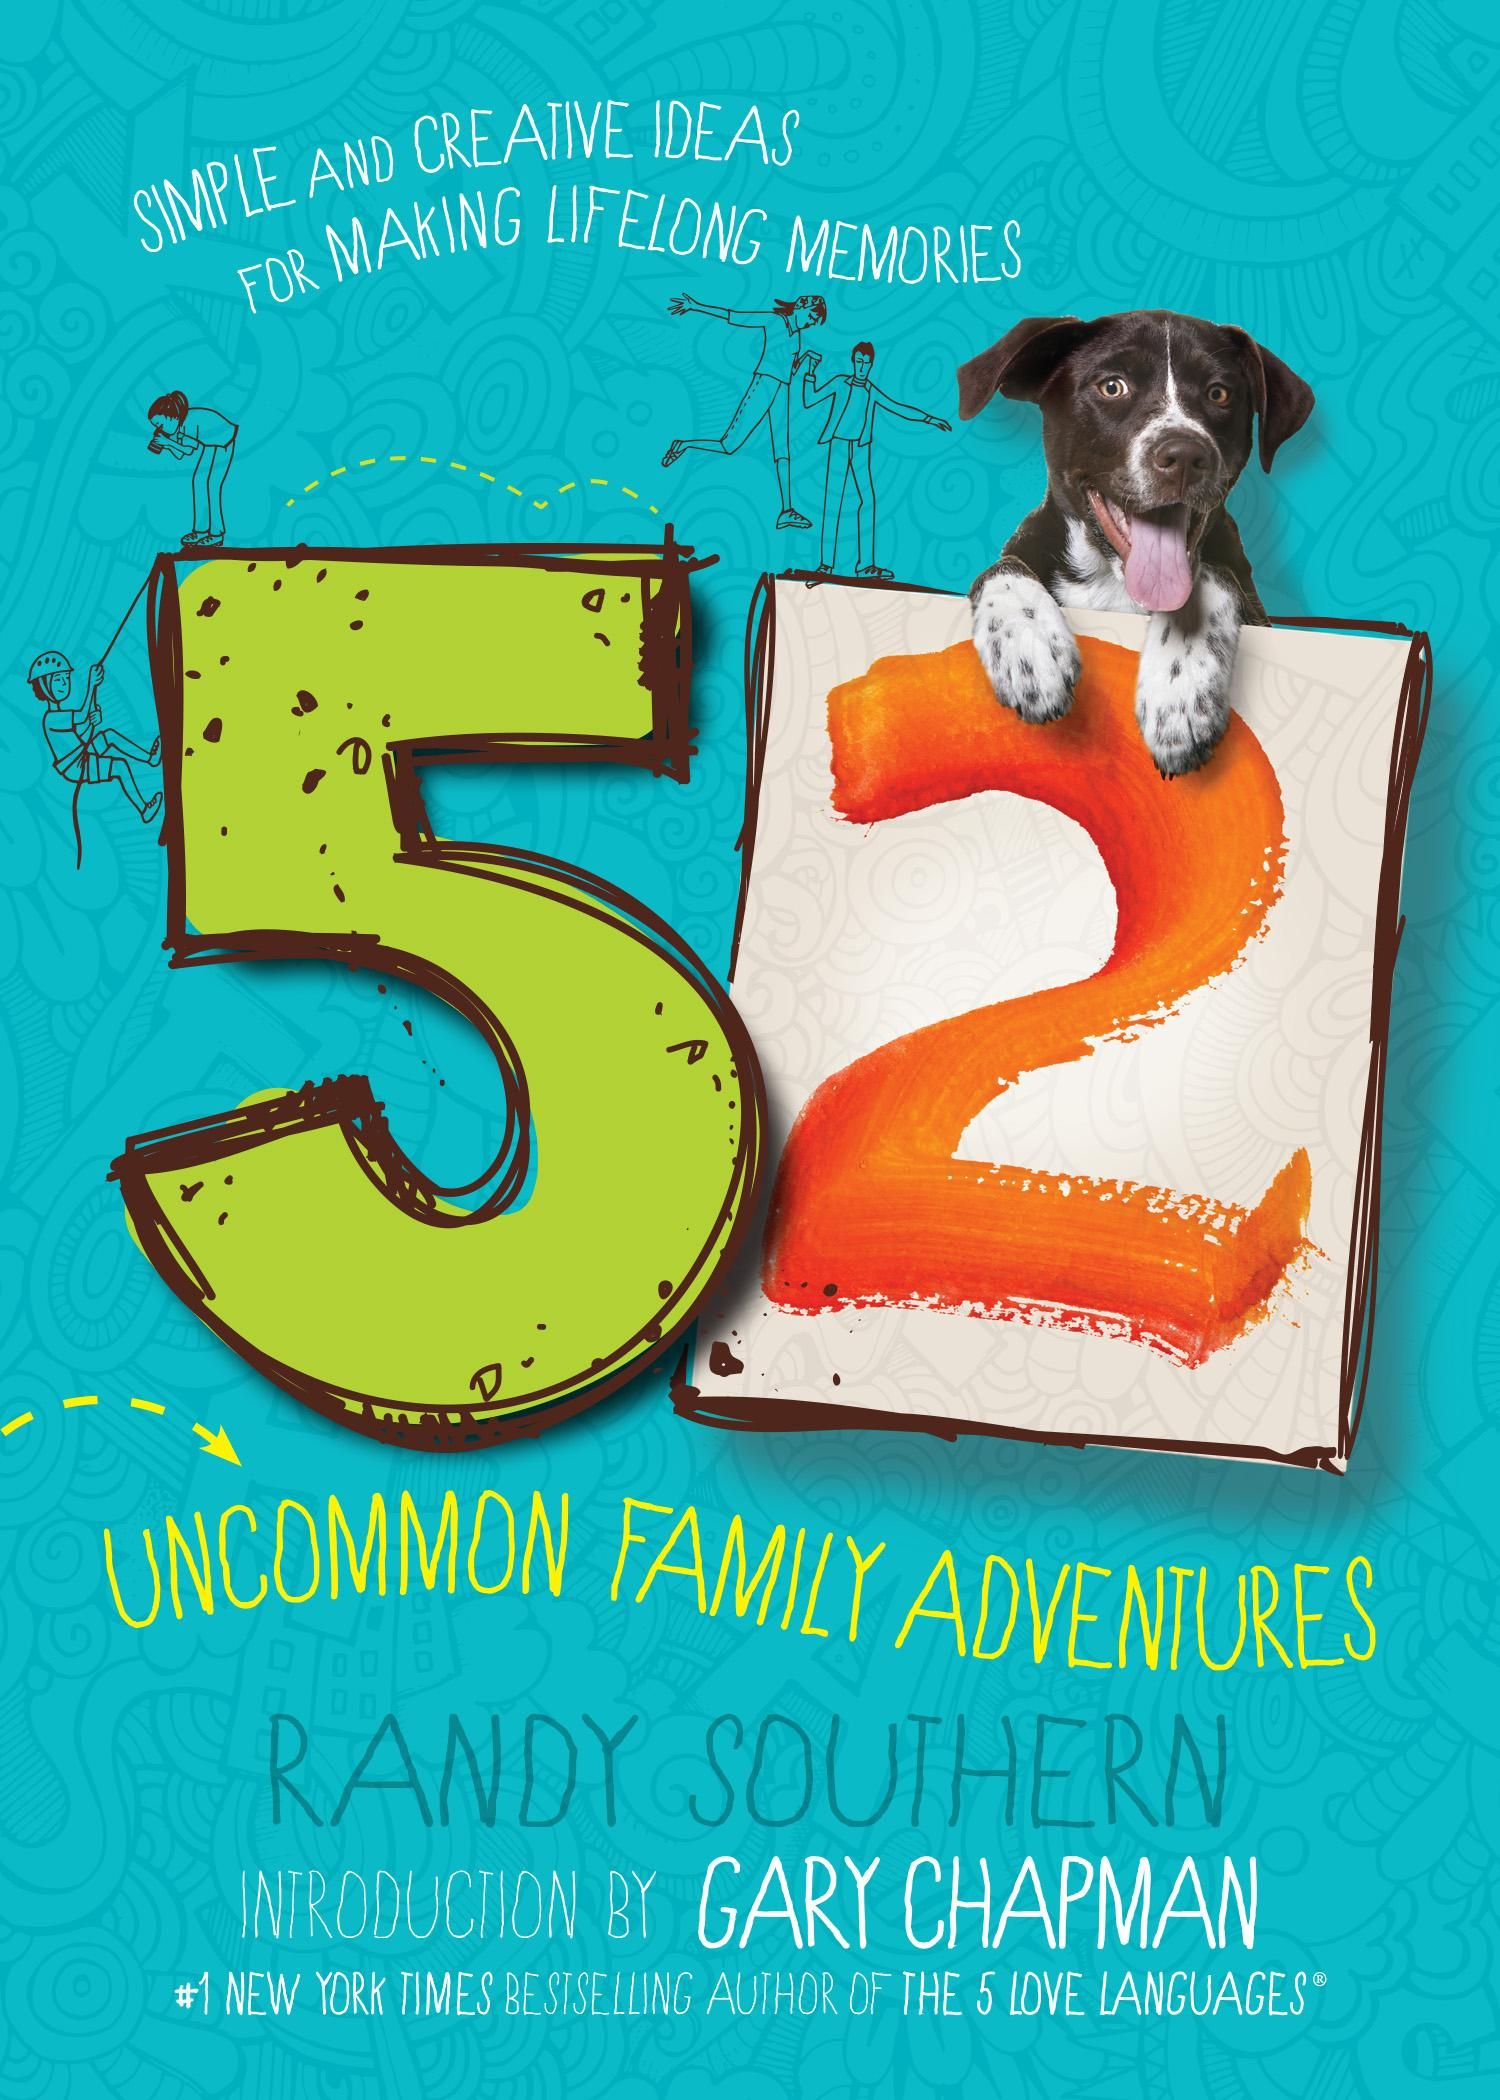 52 Uncommon Family Adventures